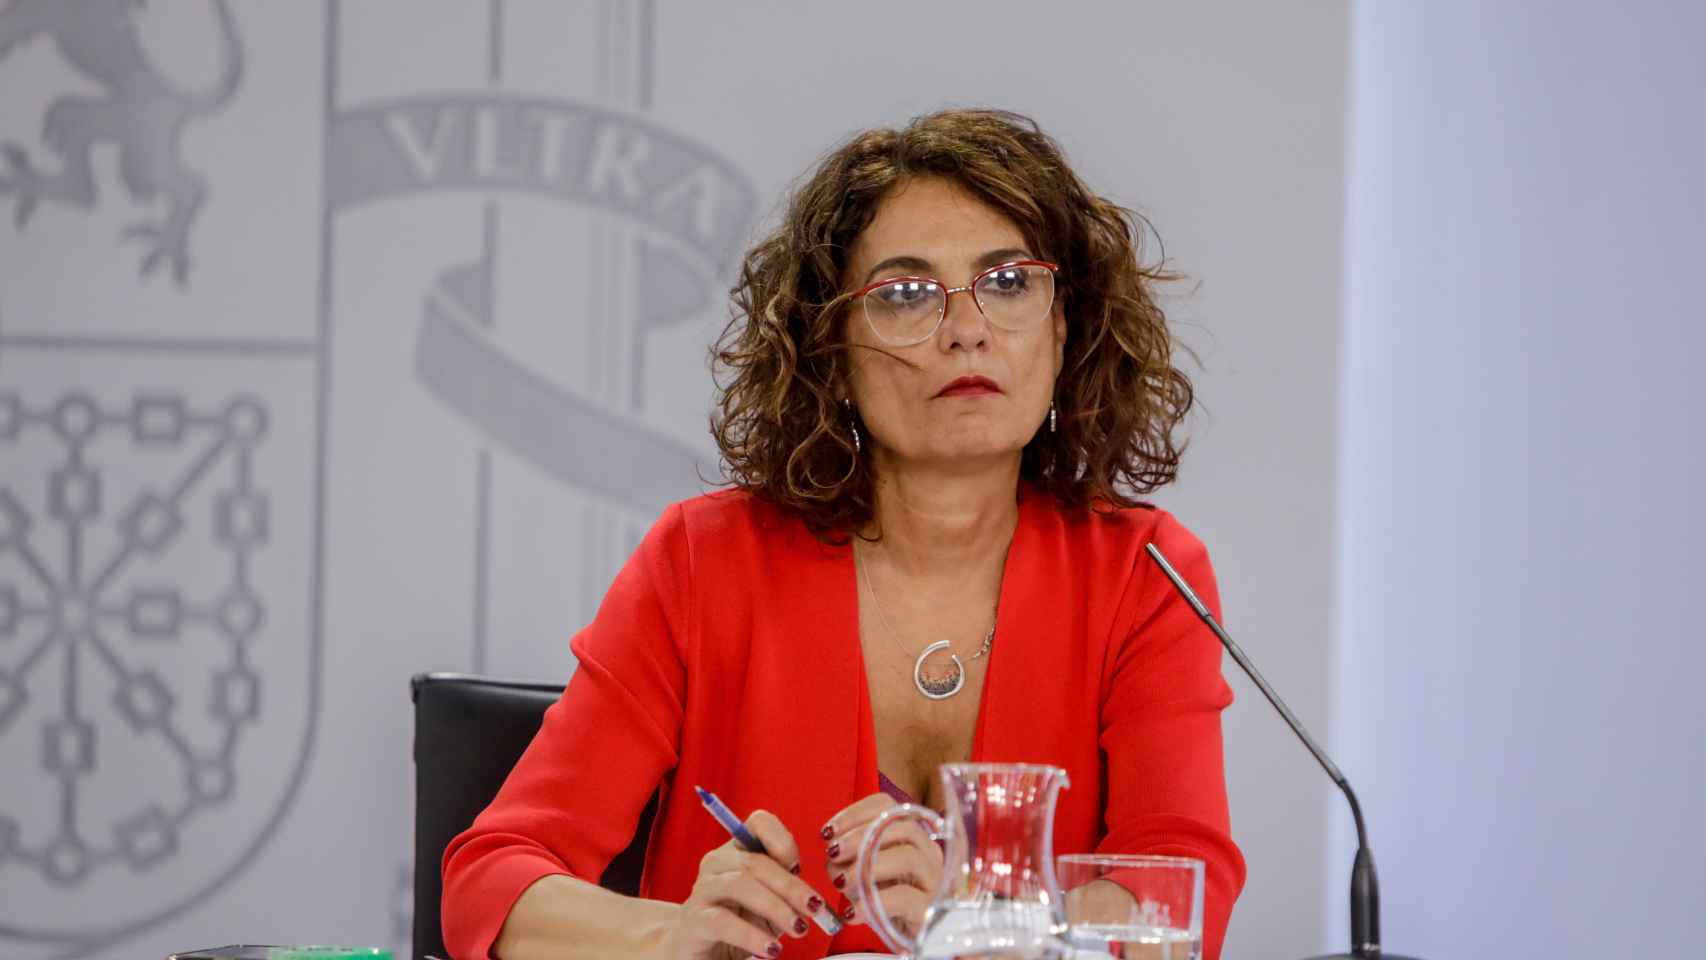 La ministra Portavoz y de Hacienda, María Jesús Montero.